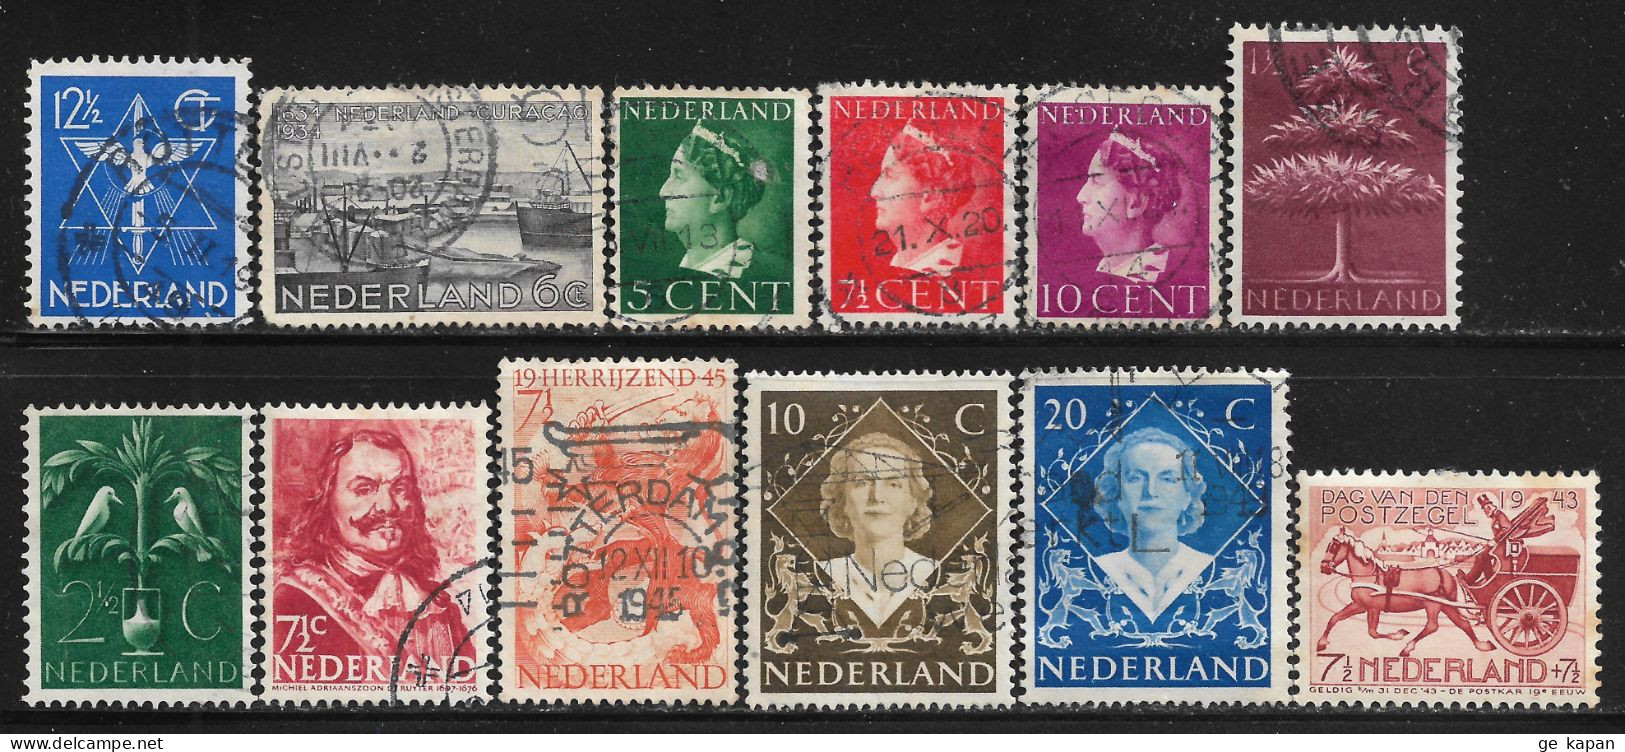 1933-1948 NETHERLANDS Set Of 1 MLH + 11 USED STAMPS (Sc.# 200,202,216,217,218,246,248,252,277,304,305,B148) CV €2.75 - Gebruikt